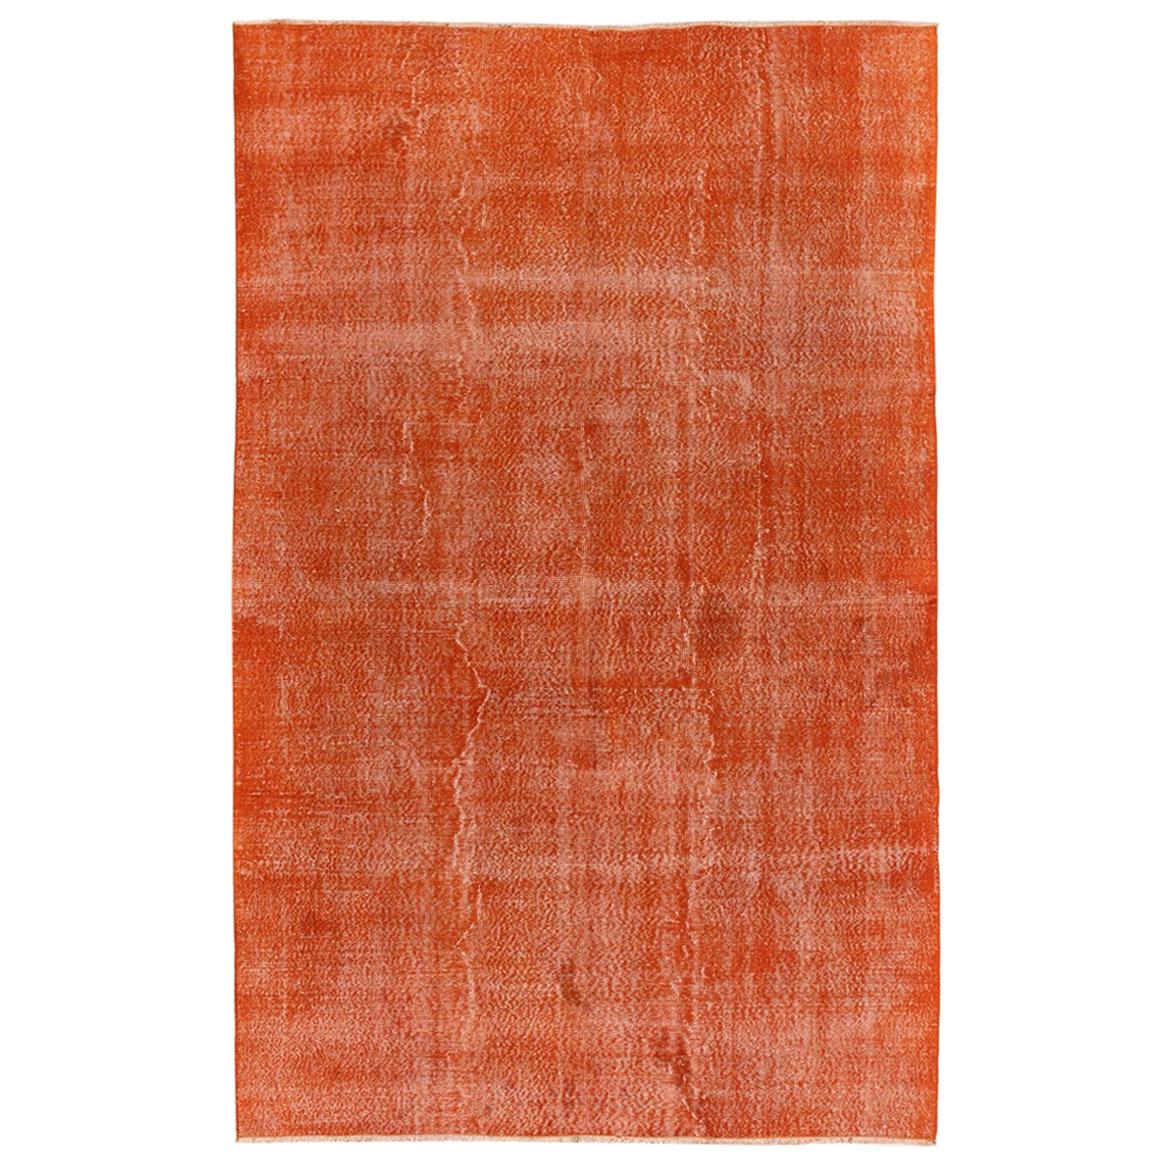 Handgefertigter türkischer Teppich, 6.3x9.6 Fuß, moderner massiver orangefarbener Teppich, Bodenbezug